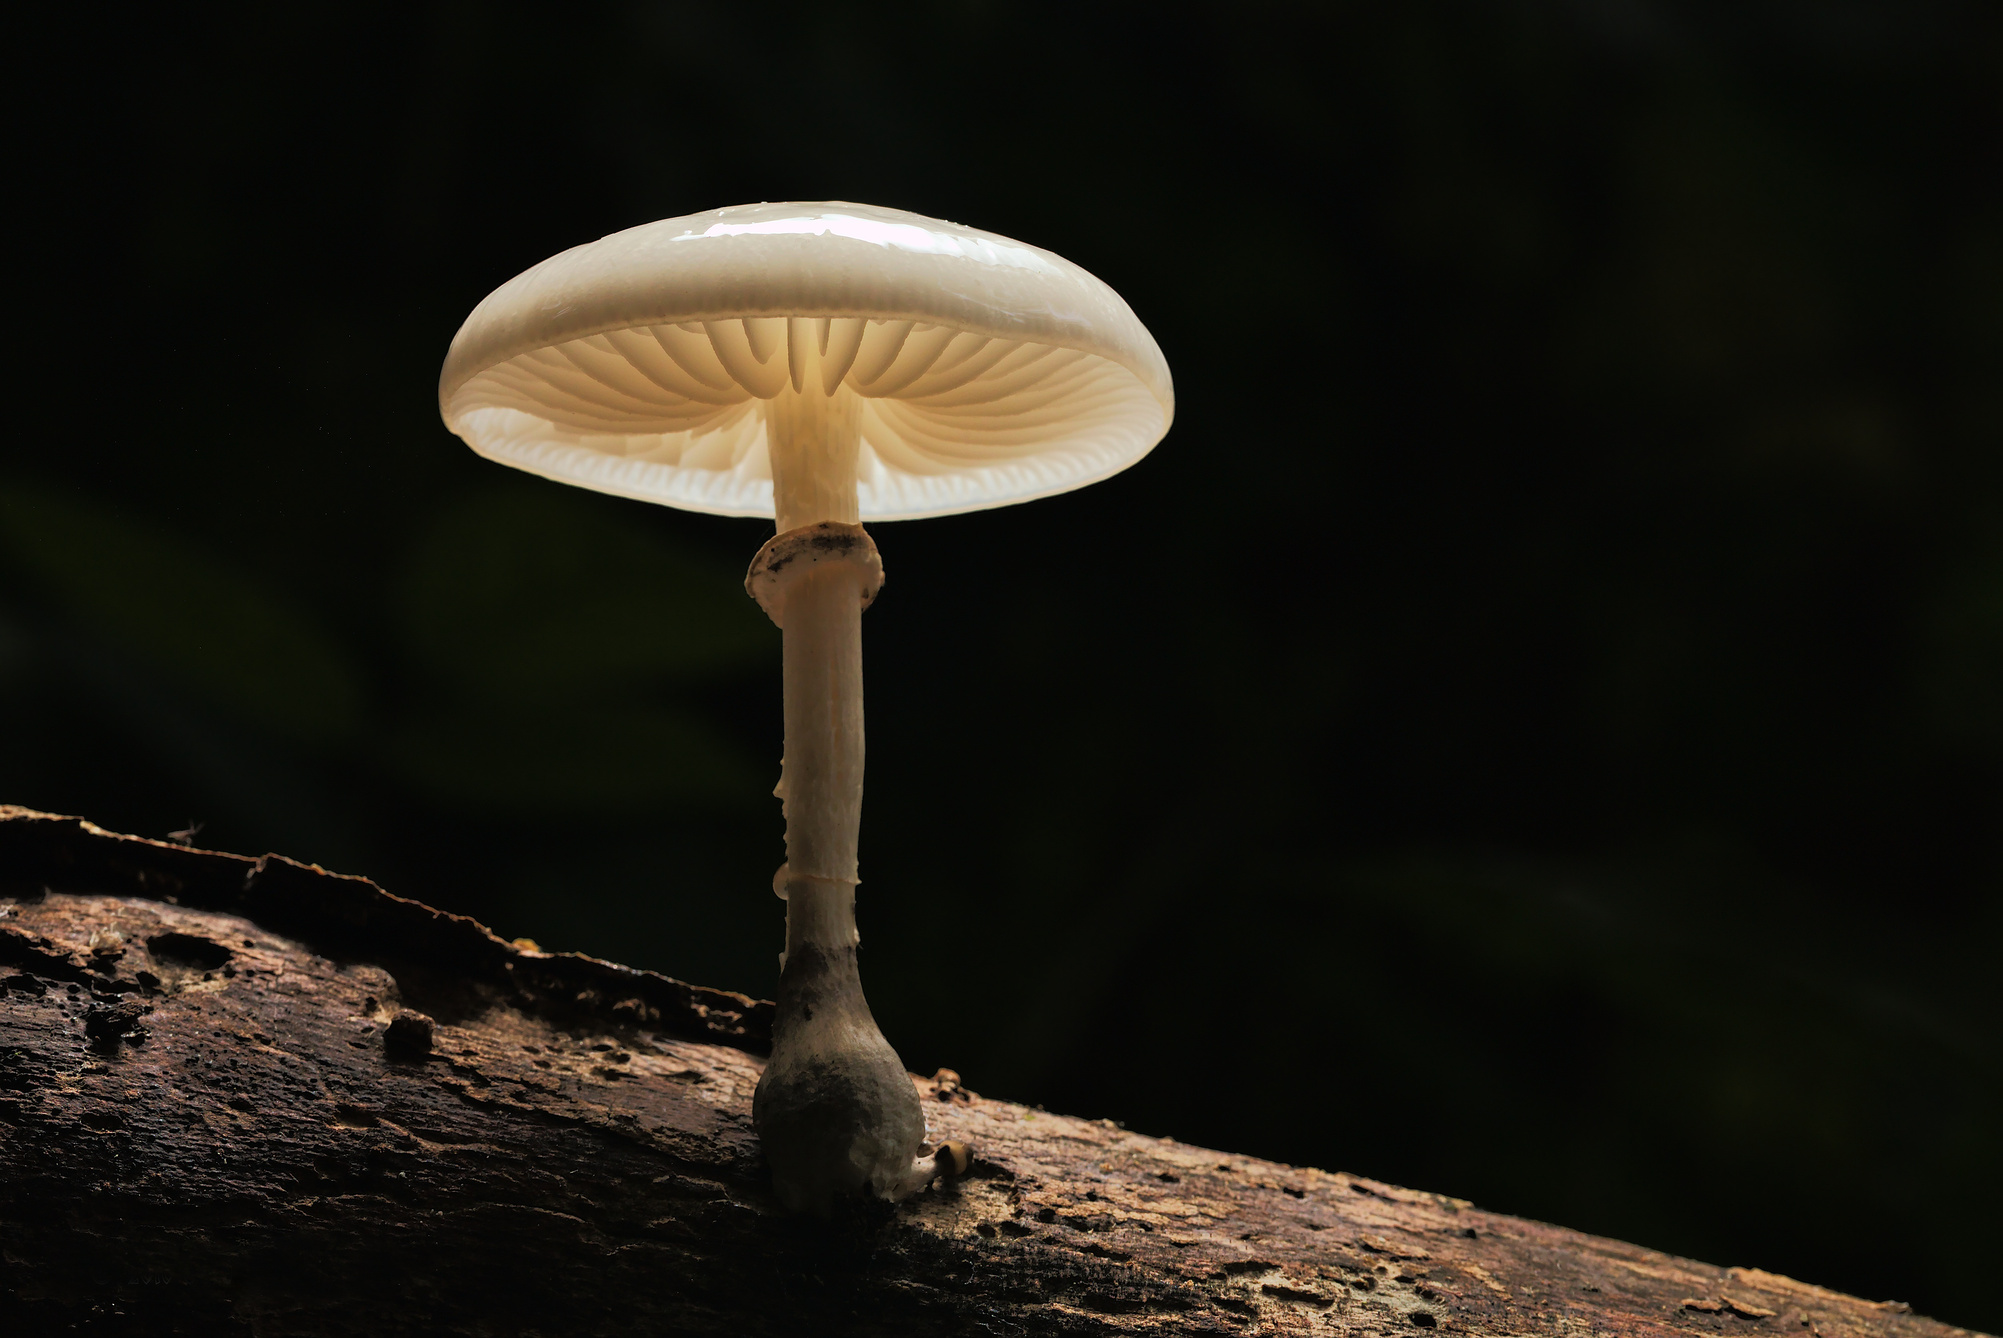 Mushroom On Wood With Dark Background